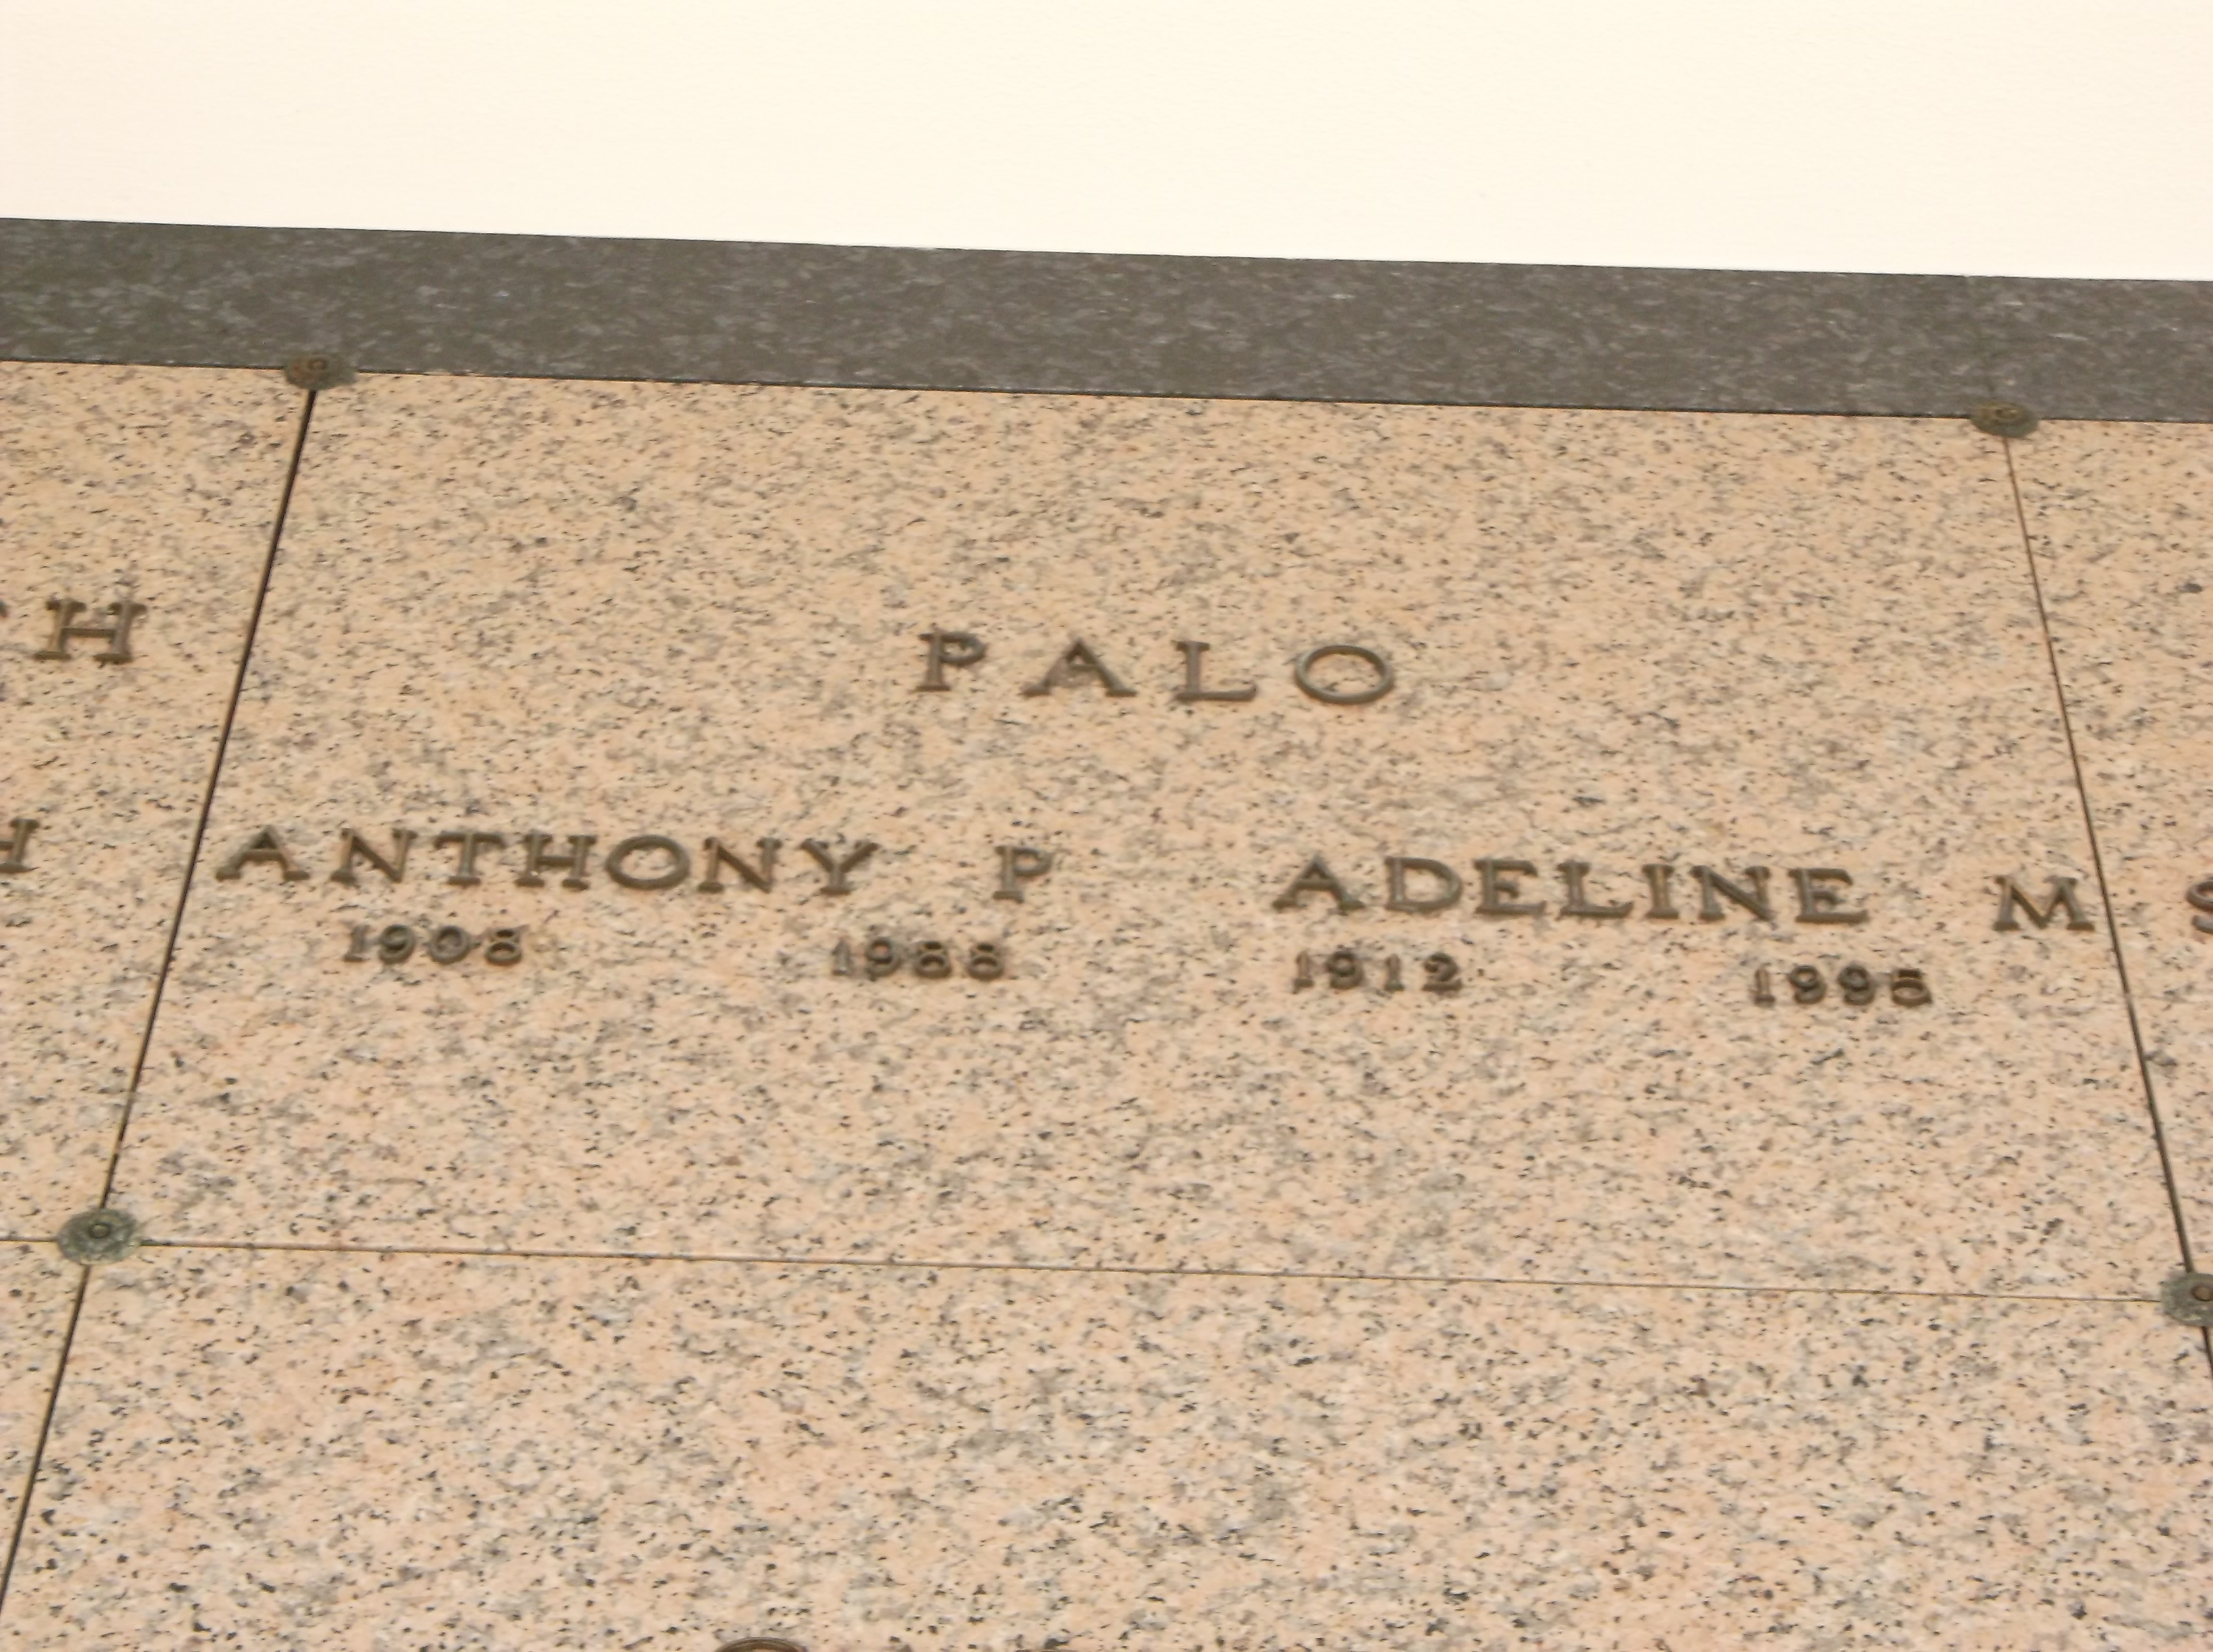 Anthony Palo